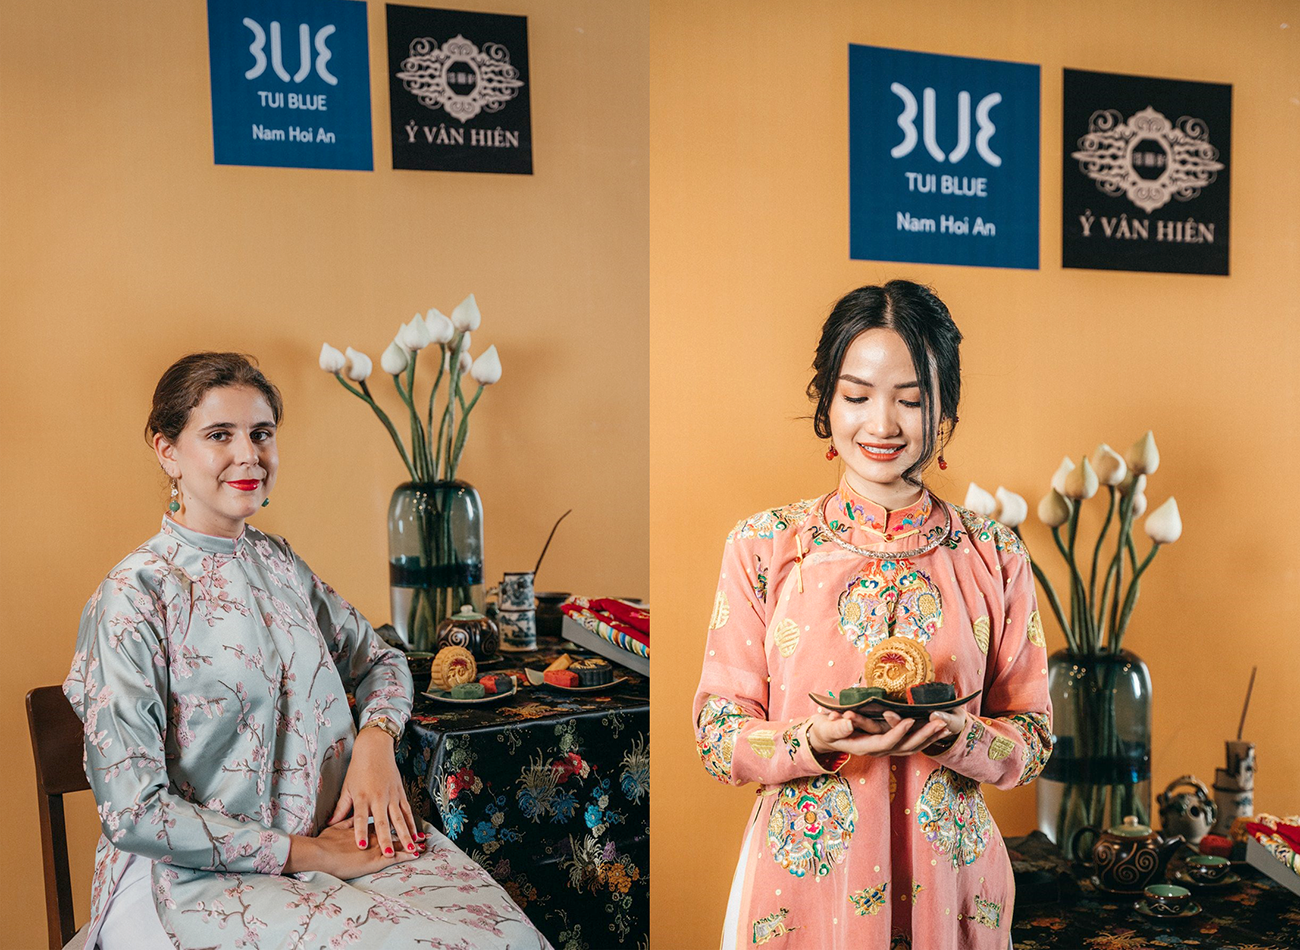 Chương trình văn hóa du lịch với chủ đề “Cổ phục Việt - nơi tương lai được kiến tạo từ quá khứ” năm 2020 chọn lụa Mã Châu cho những thiết kế truyền thống của mình. Ảnh: ĐINH TRÀ